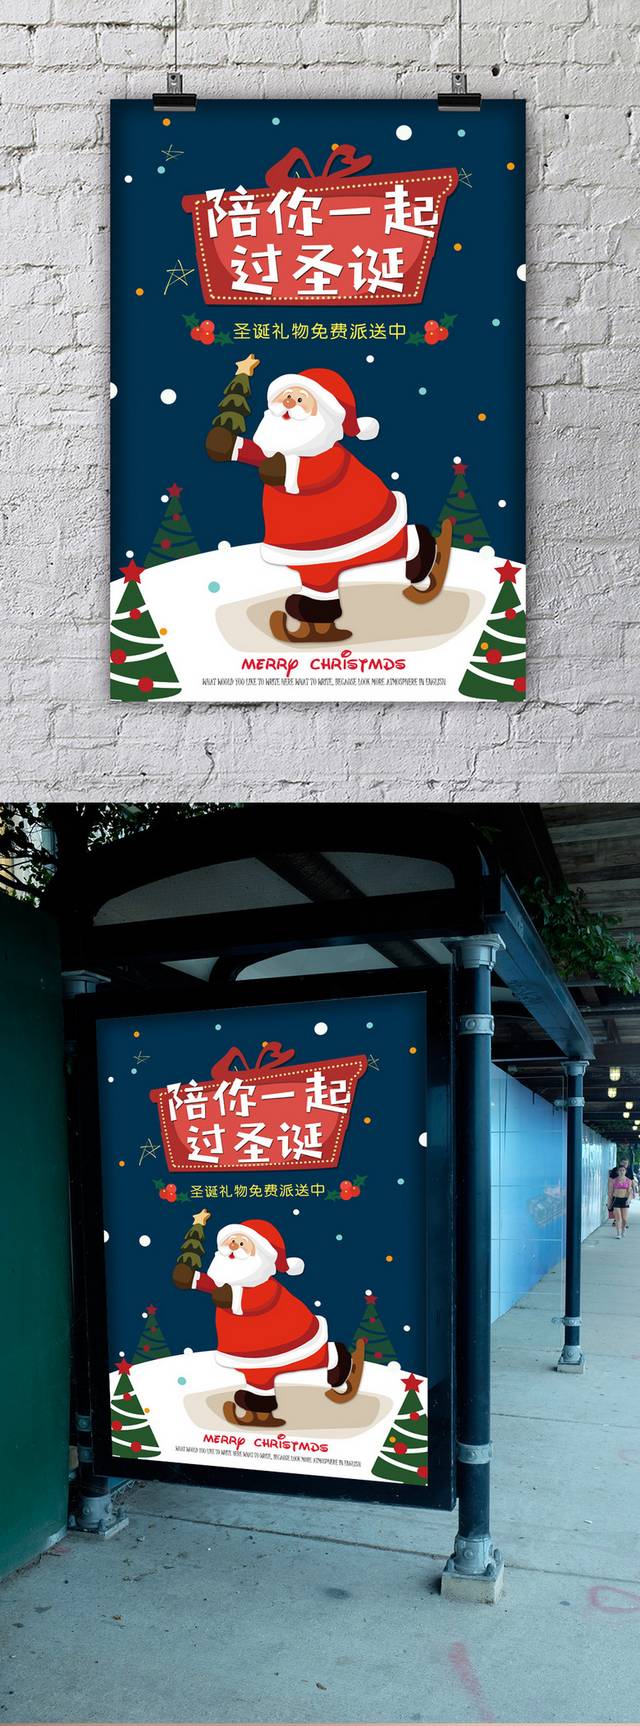 创意大气圣诞节促销海报模板下载